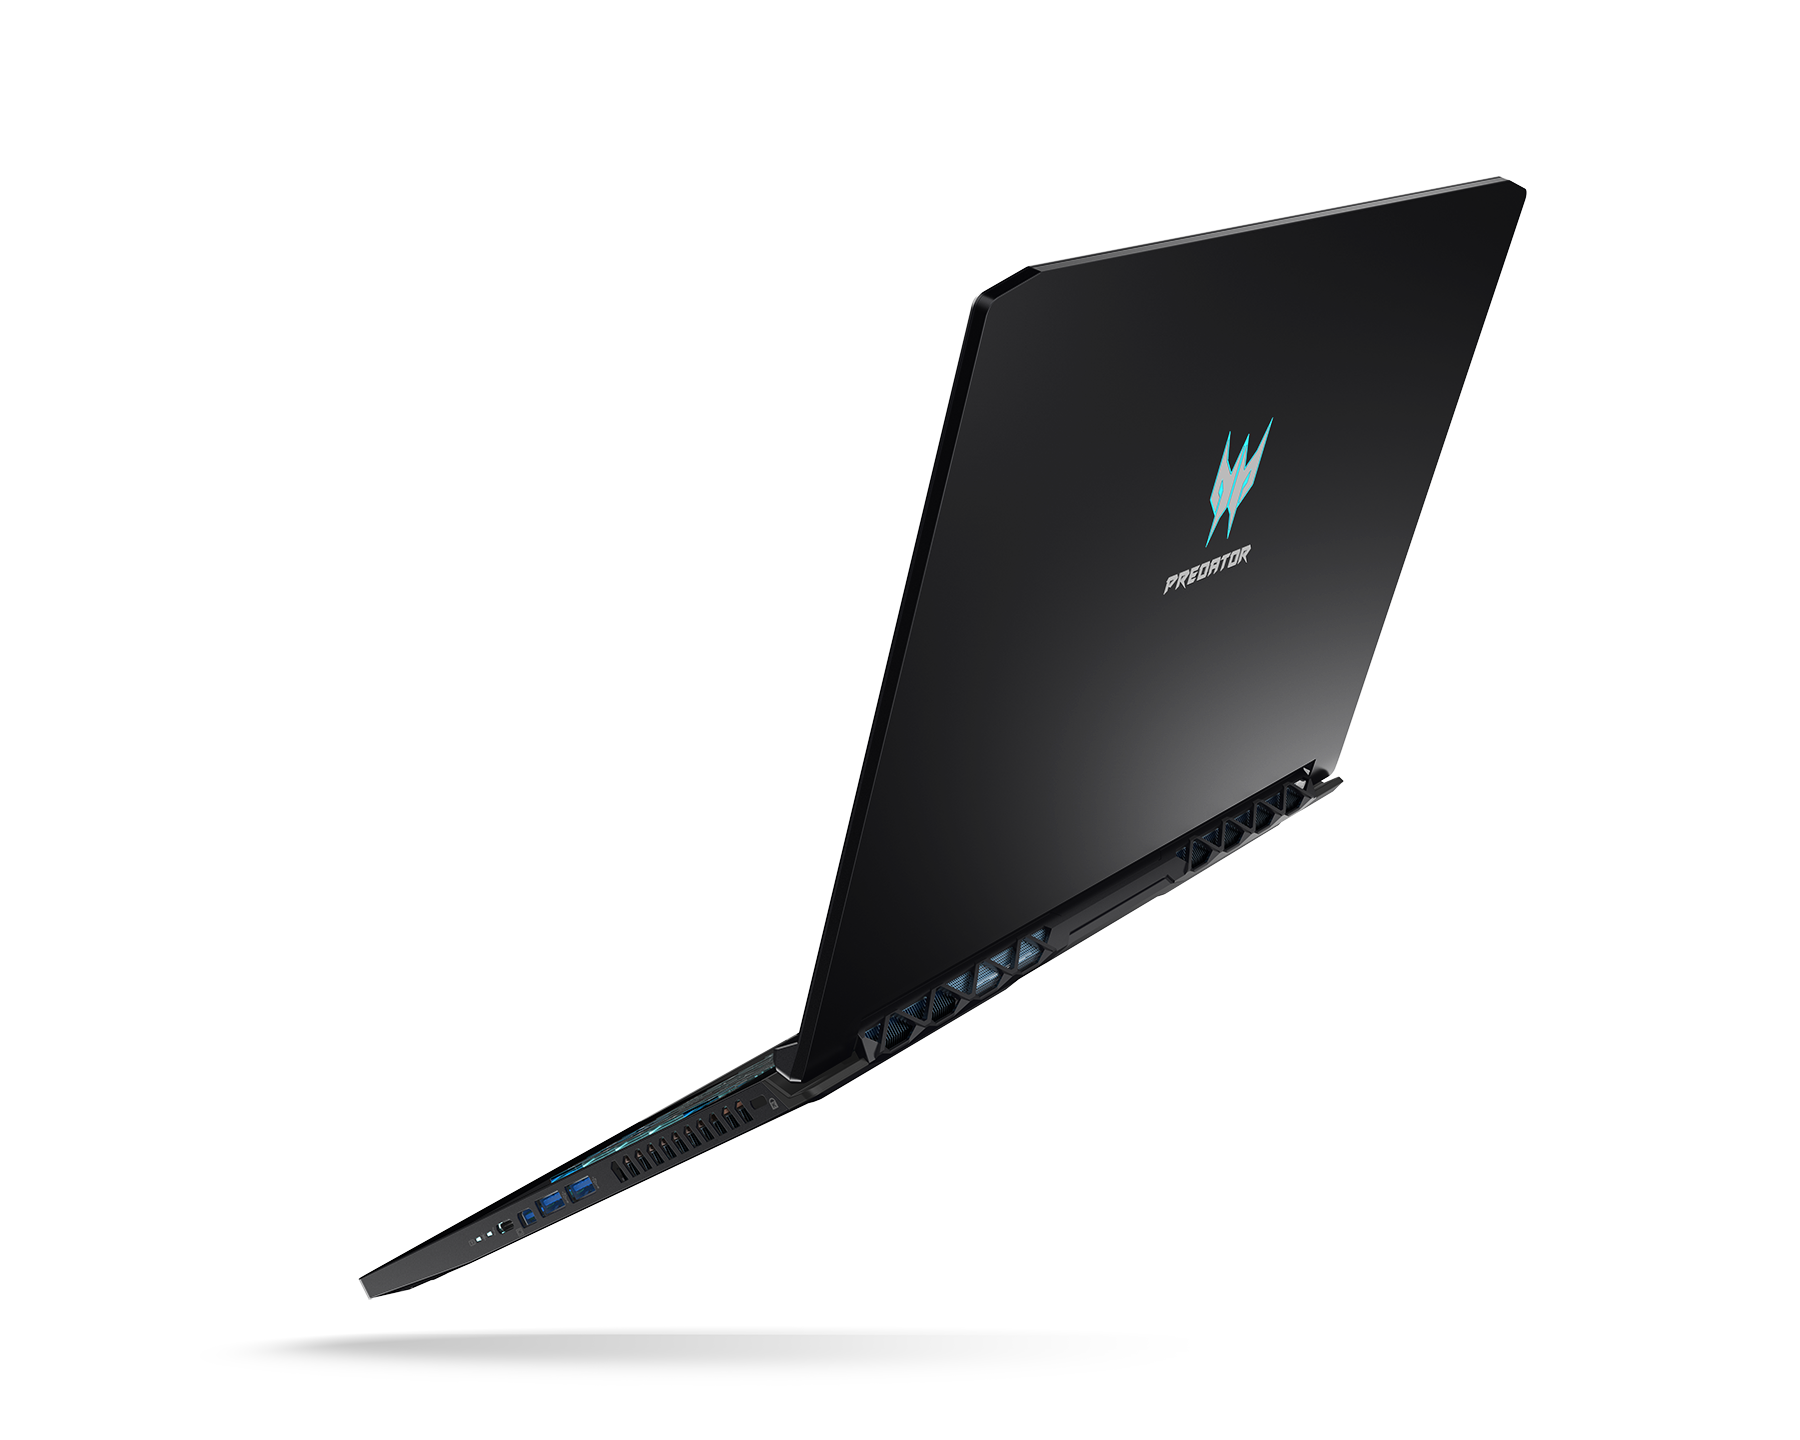 CES 2019: Acer giới thiệu laptop gaming cao cấp mới Predator Triton 500 - được trang bị NVIDIA GeForce RTX, giá bán $1,799